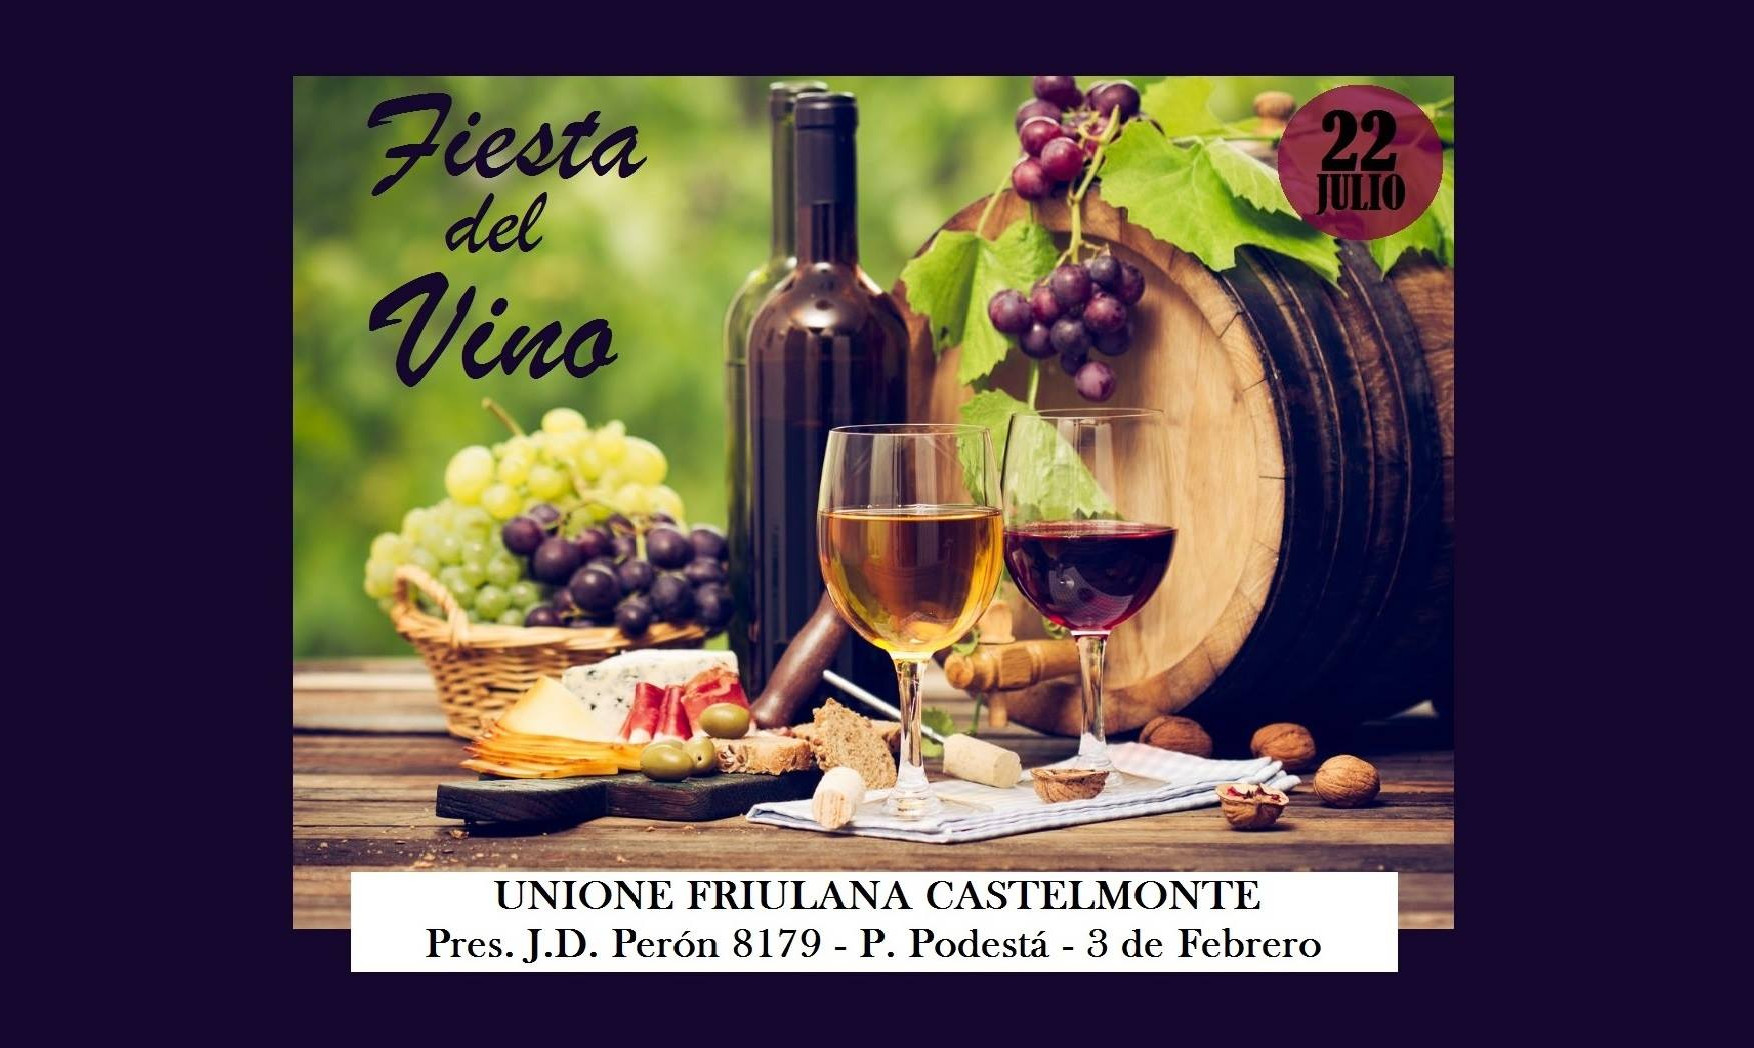 Fiesta del vino (Unione Friulana Castelmonte, 22 luglio 2018 – Pte. Peròn 8179, Pablo Podestà, Buenos Aires)